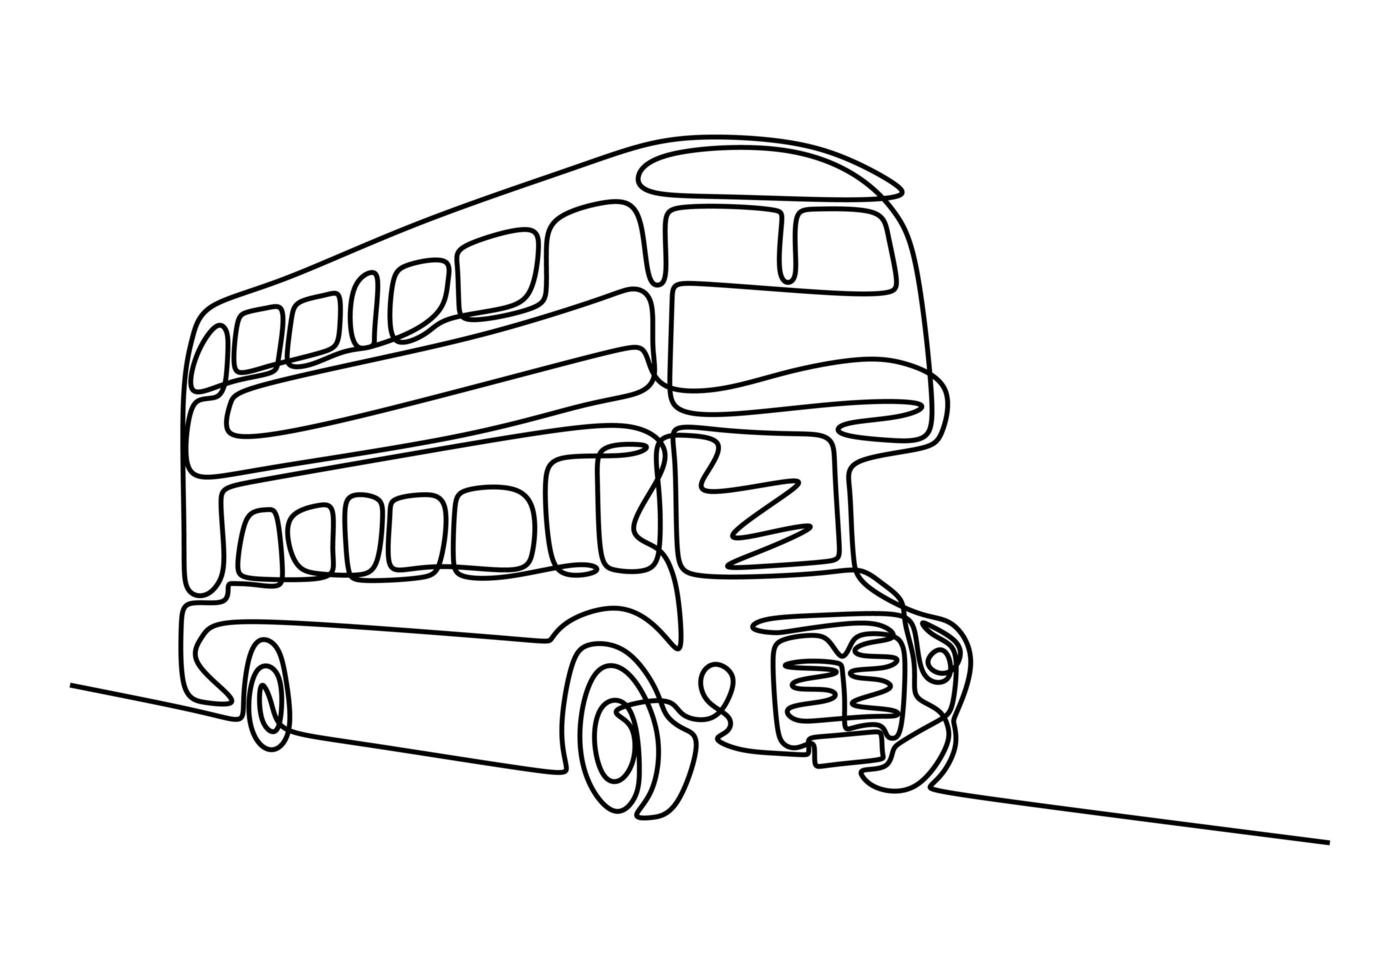 una linea di trasporto in autobus. autobus a due piani. bus una linea di disegno. vettore